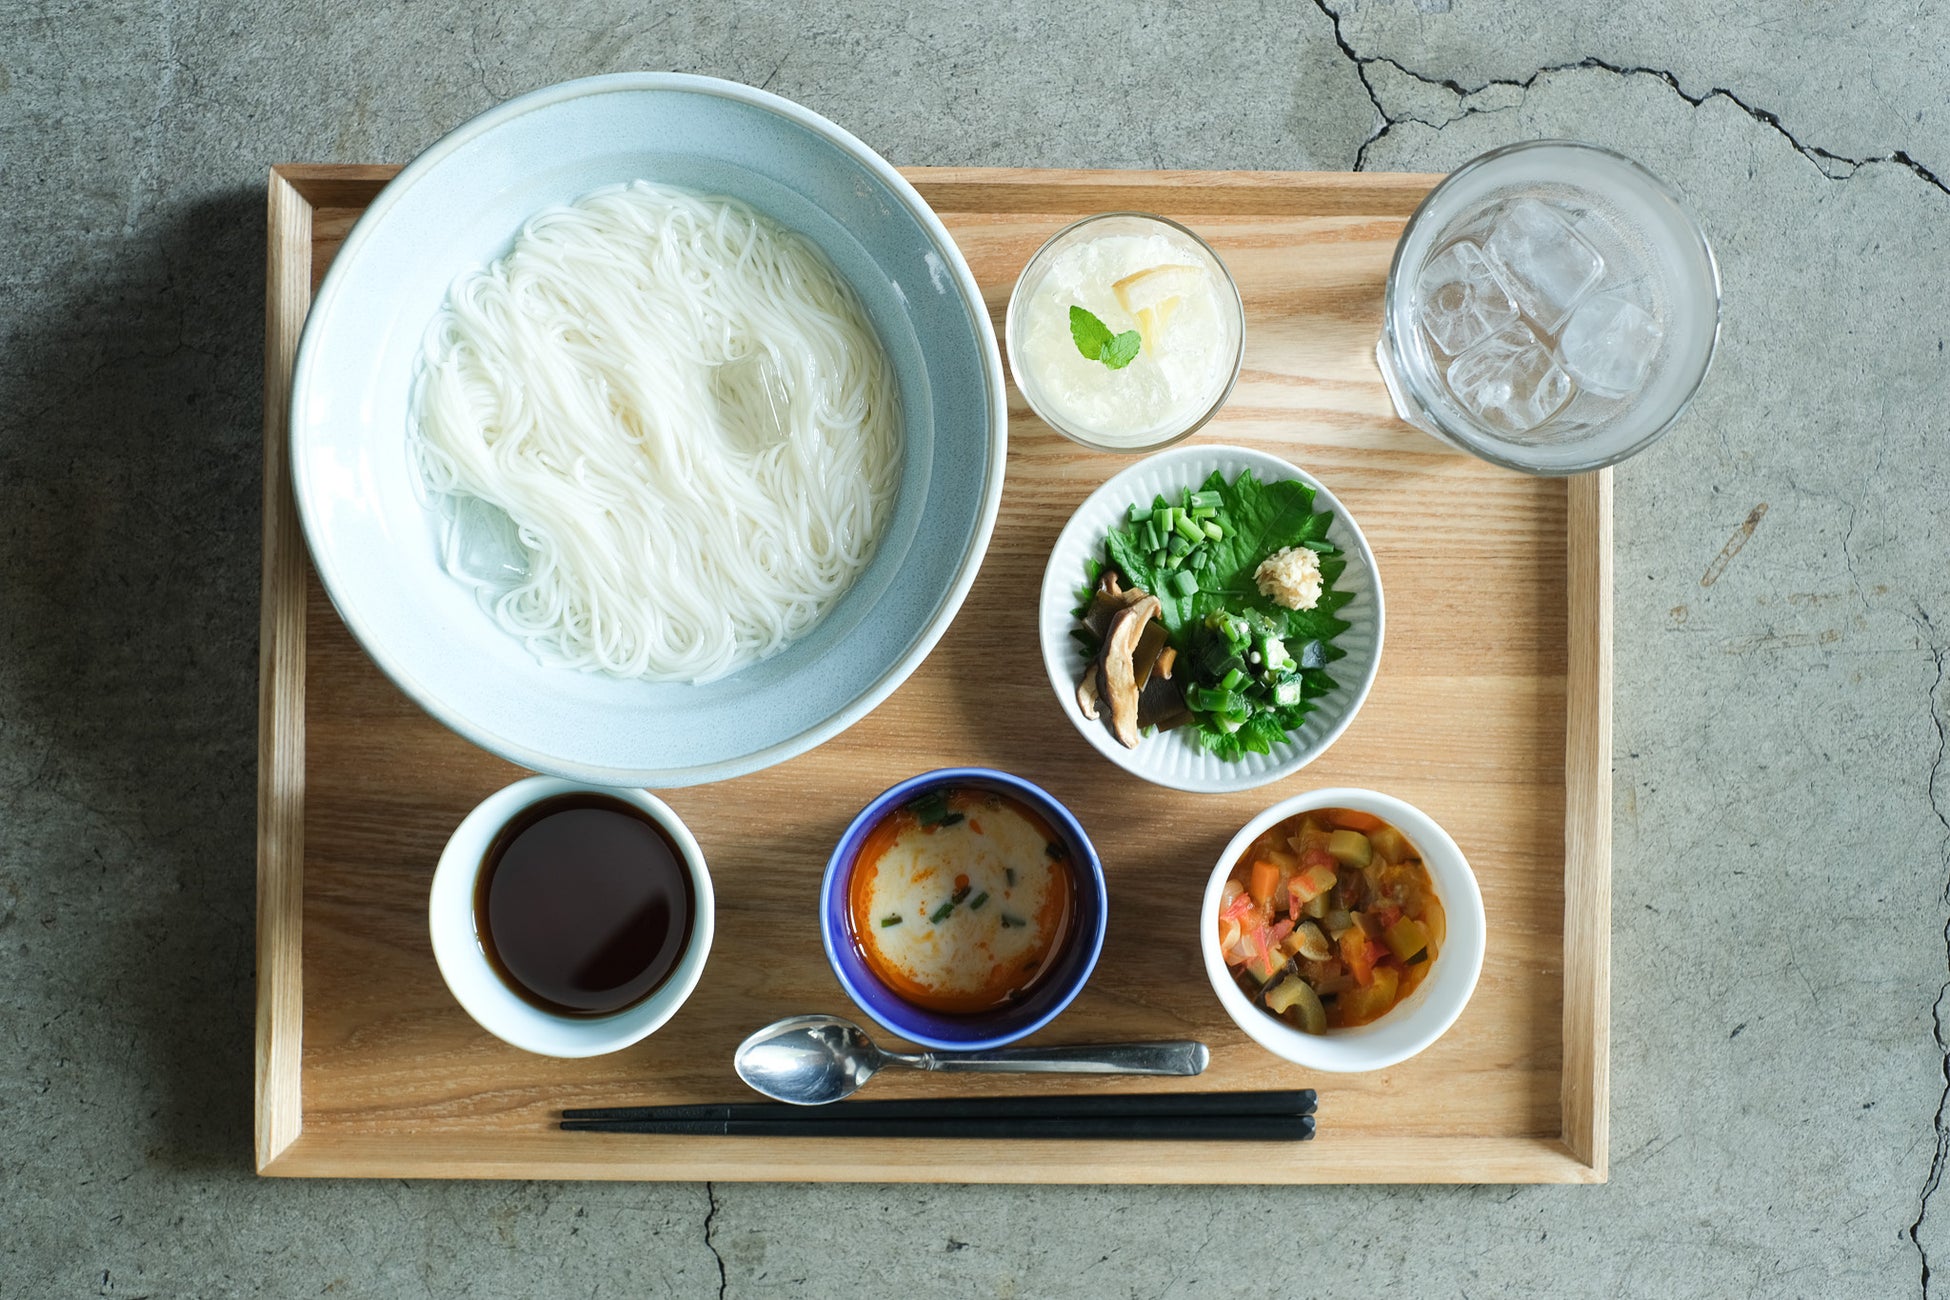 日本の夏はそうめん！江戸時代から続く伝統の【かも川手延べ素麺】が主役の8月限定朝食メニューをアンカーホテル福山にて販売開始します。